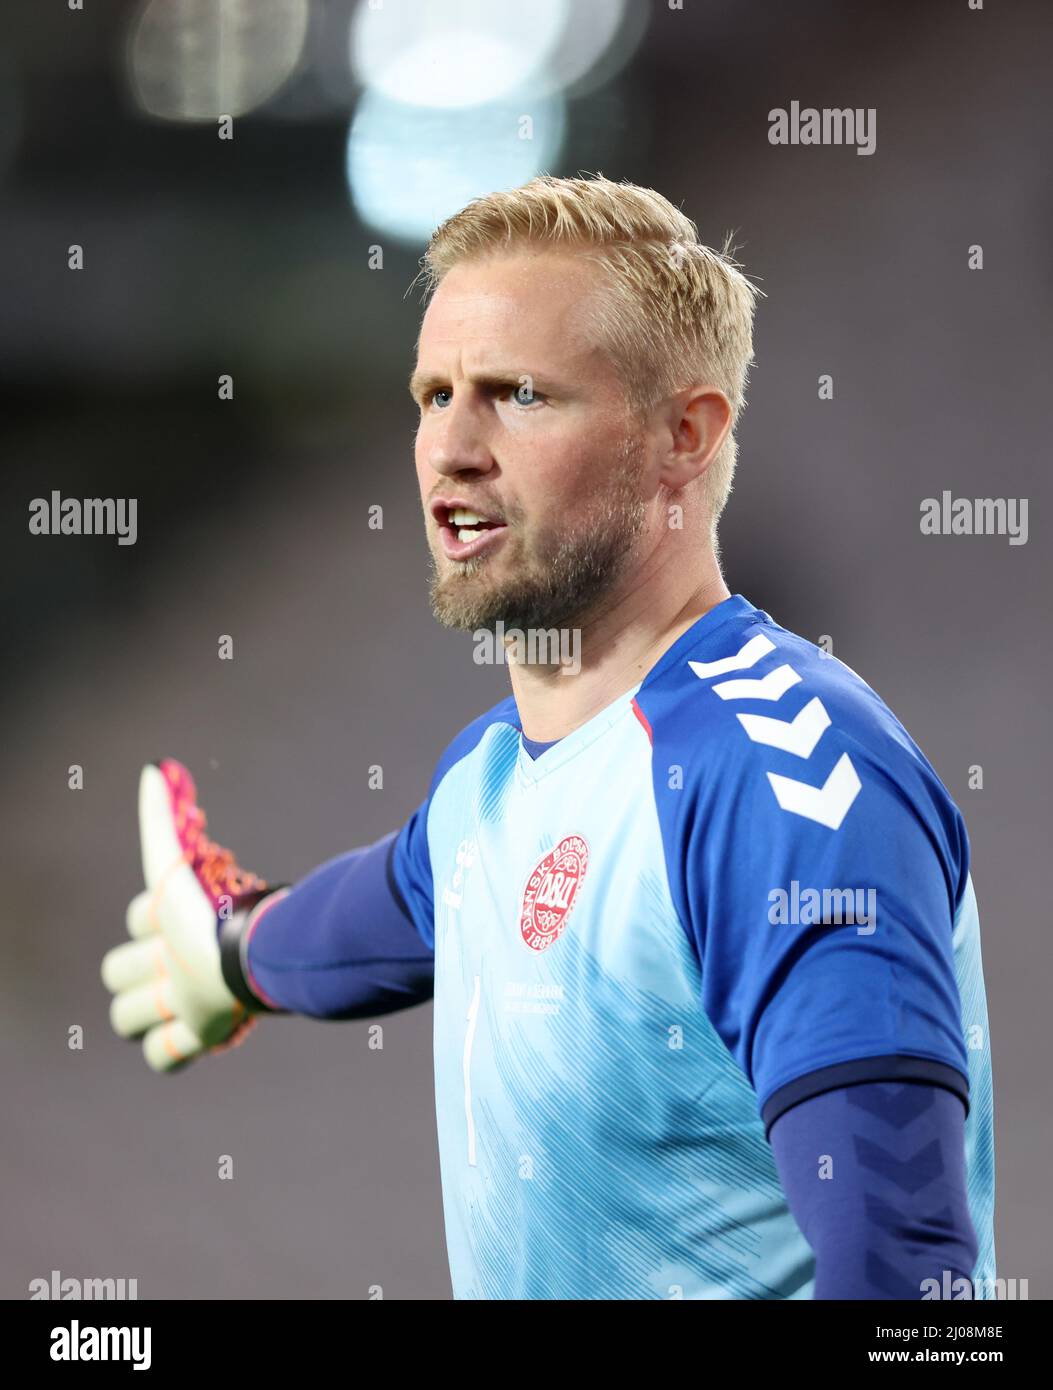 Kasper Schmeichel Fussball LŠnderspiel Deutschland - DŠnemark 1:1 © diebilderwelt / Alamy Stock Foto Stock